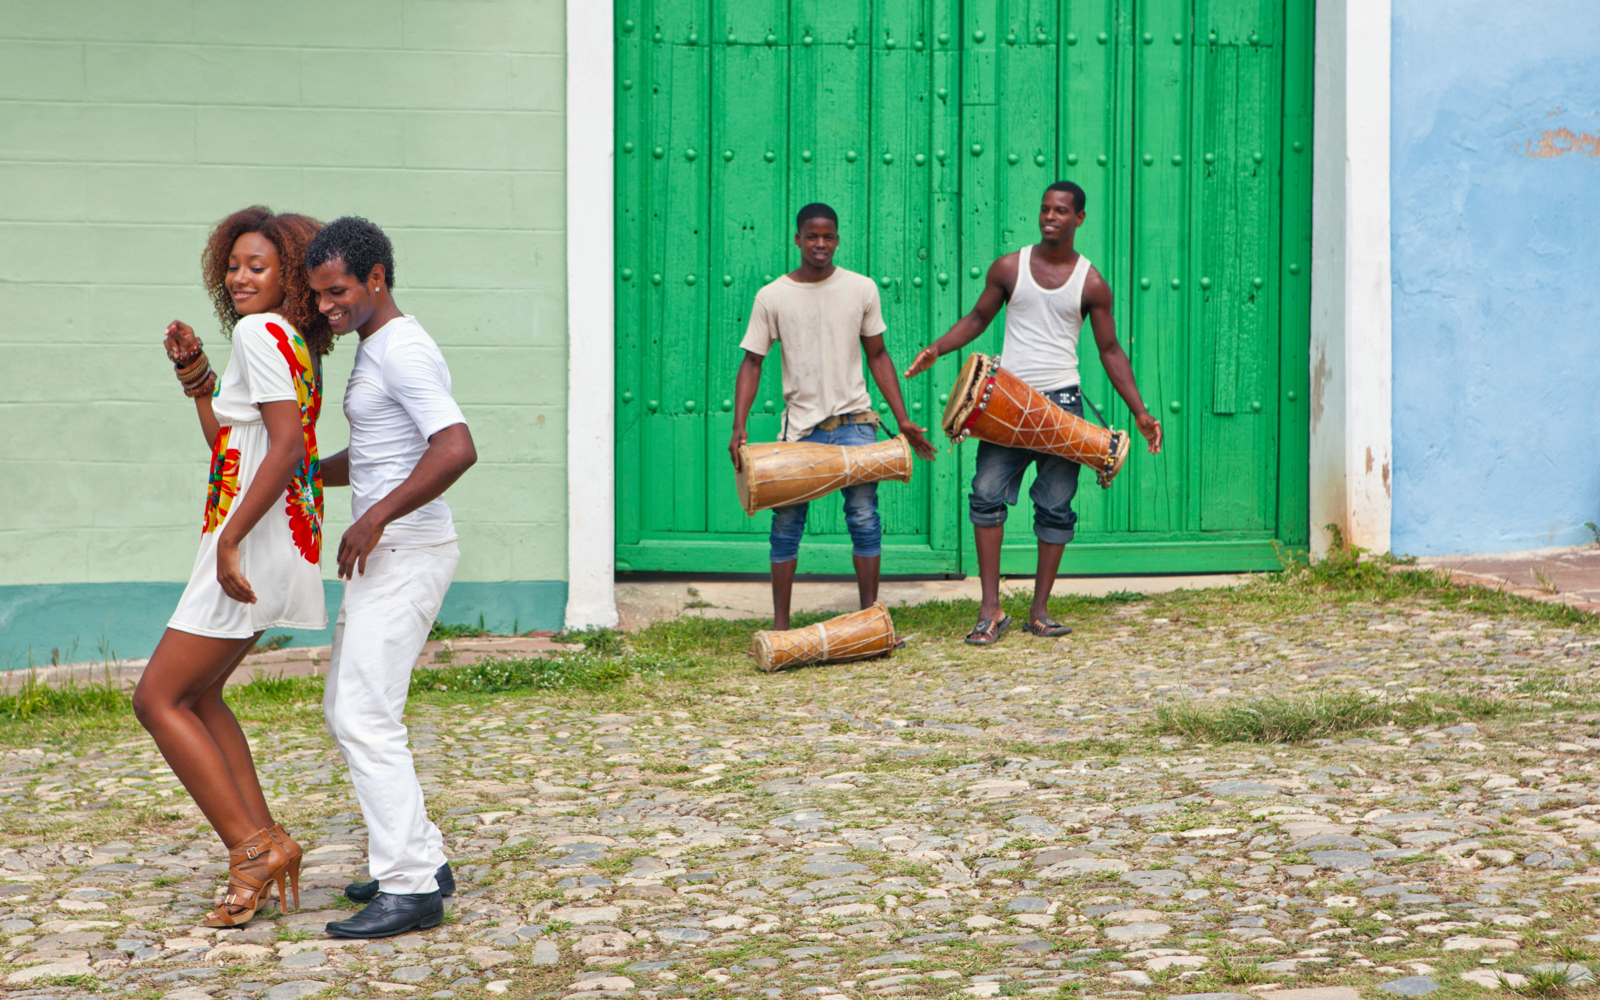 Кубинская сальса. Сальса касино Куба. Сальса танец Куба. Кубинские танцы сальса. Певица Кубинская сальса.